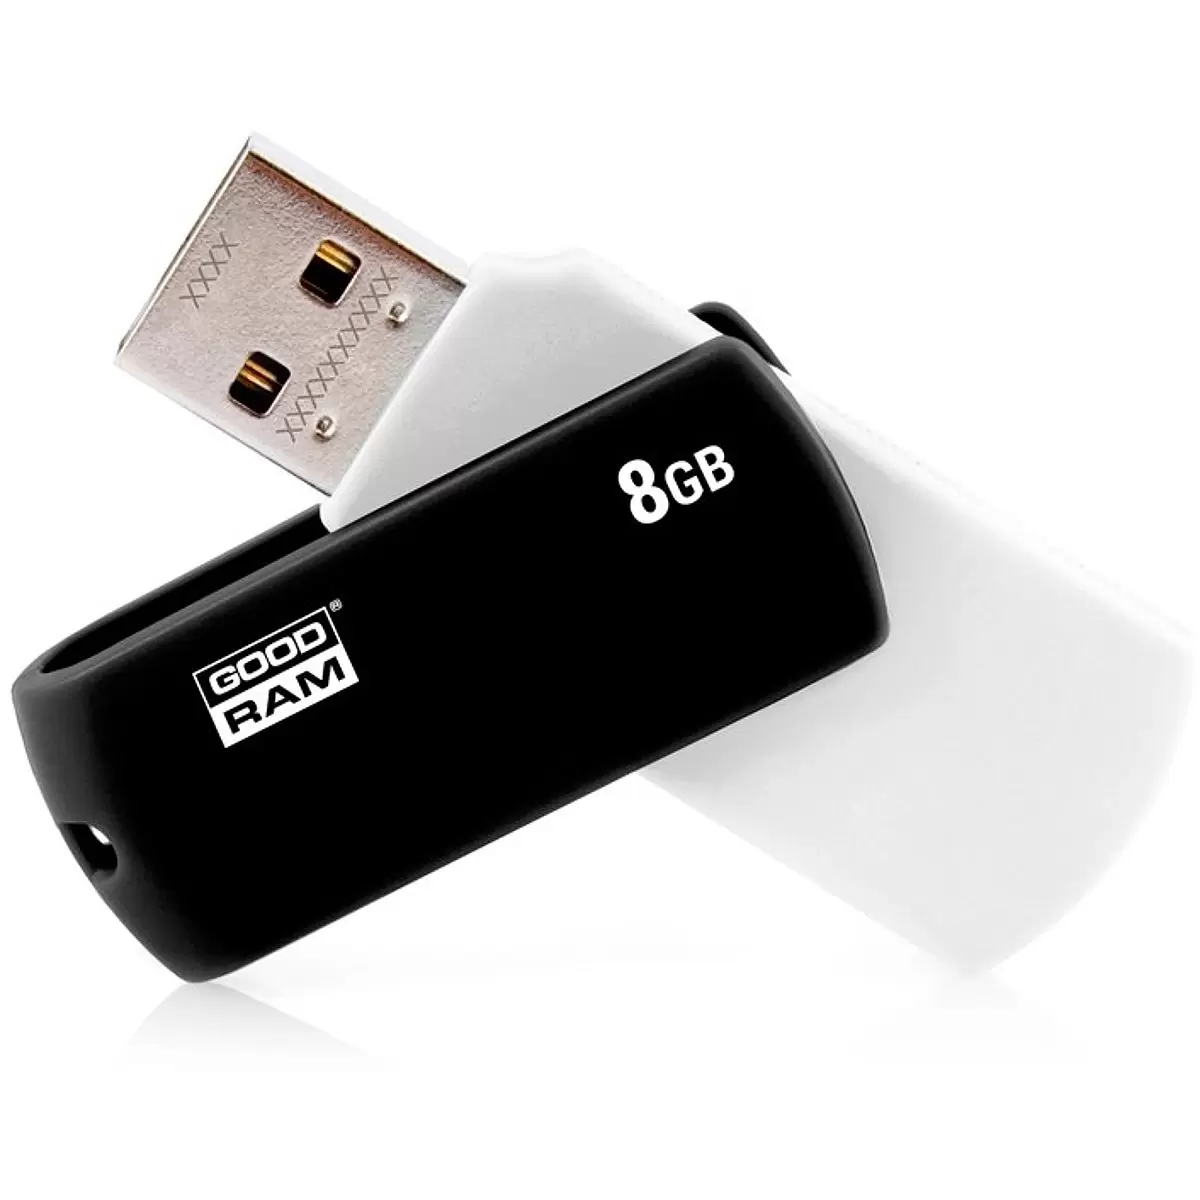 GOODRAM memory USB UCO2 8GB USB 2.0